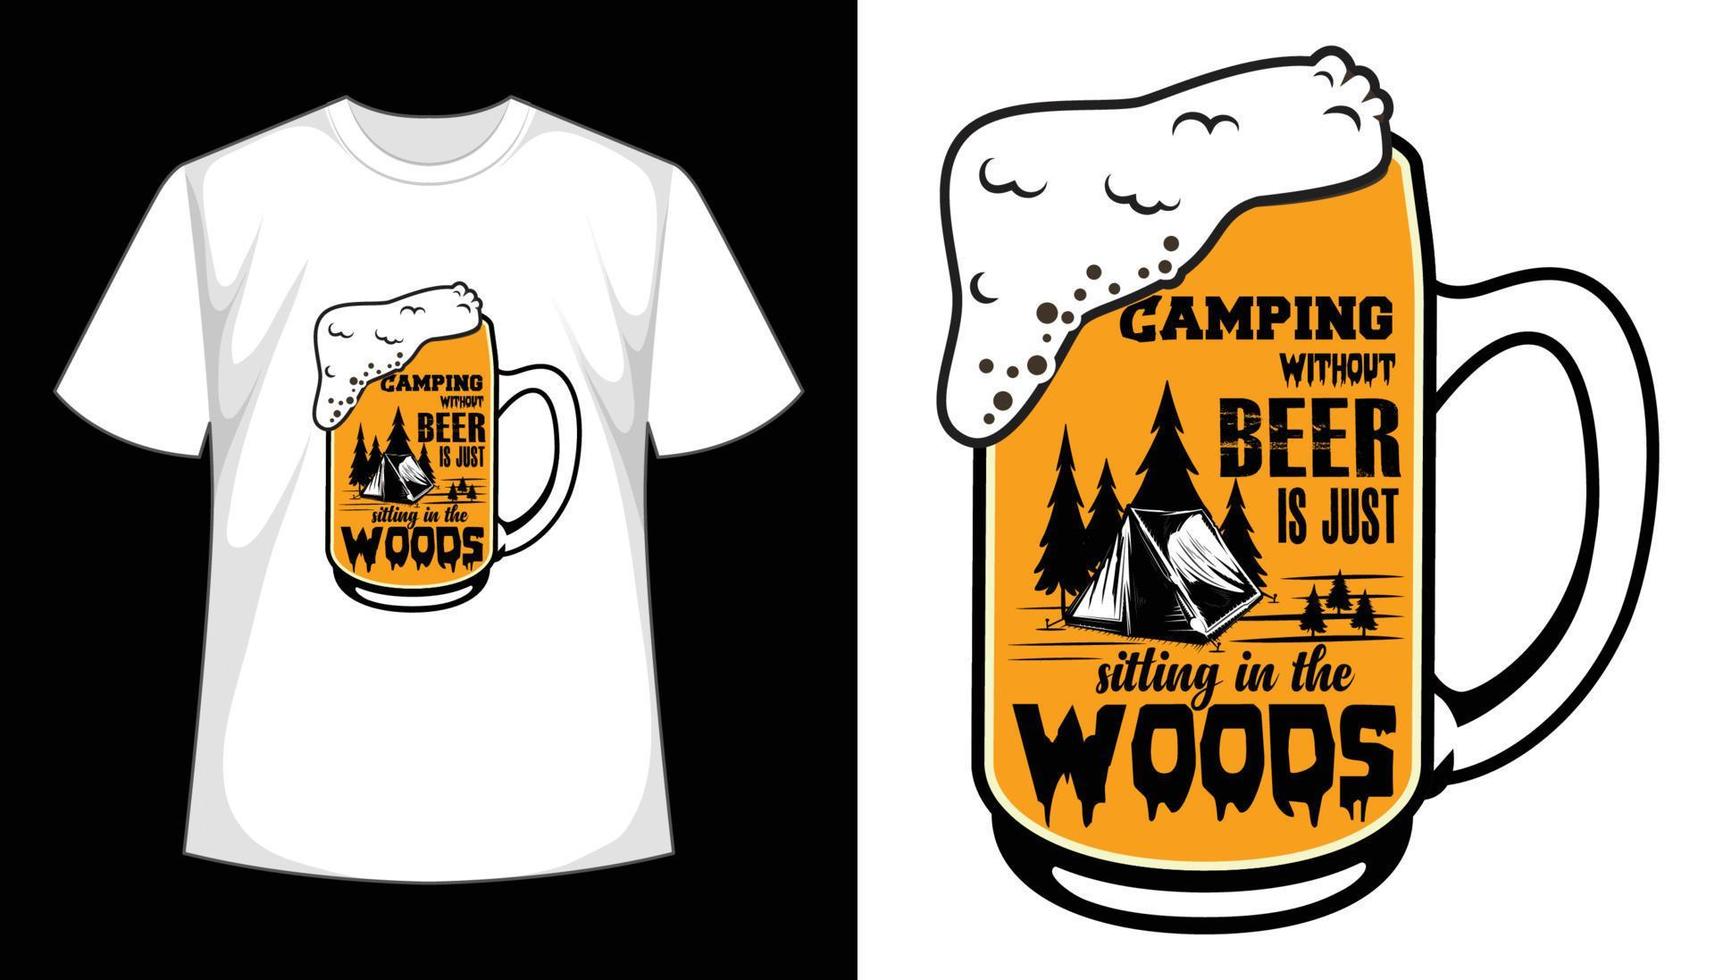 camper sans bière, c'est juste s'asseoir dans les bois - typographie, vintage, vêtements, impression, t-shirt vectoriel. conception de t-shirt de camping vecteur